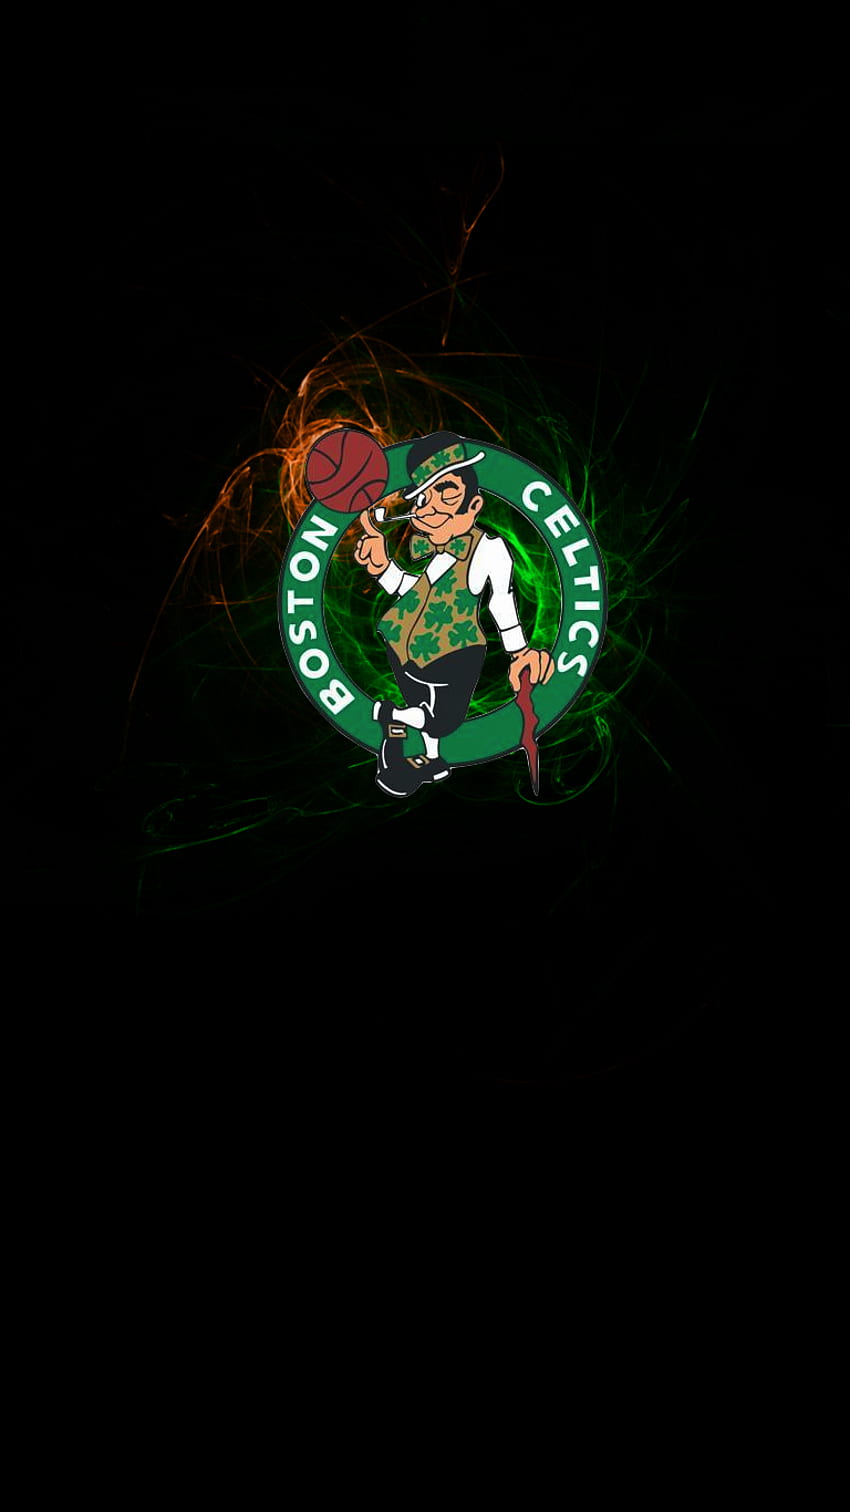 Wallpaper ID 343724  Sports Boston Celtics Phone Wallpaper NBA  1170x2532 free download